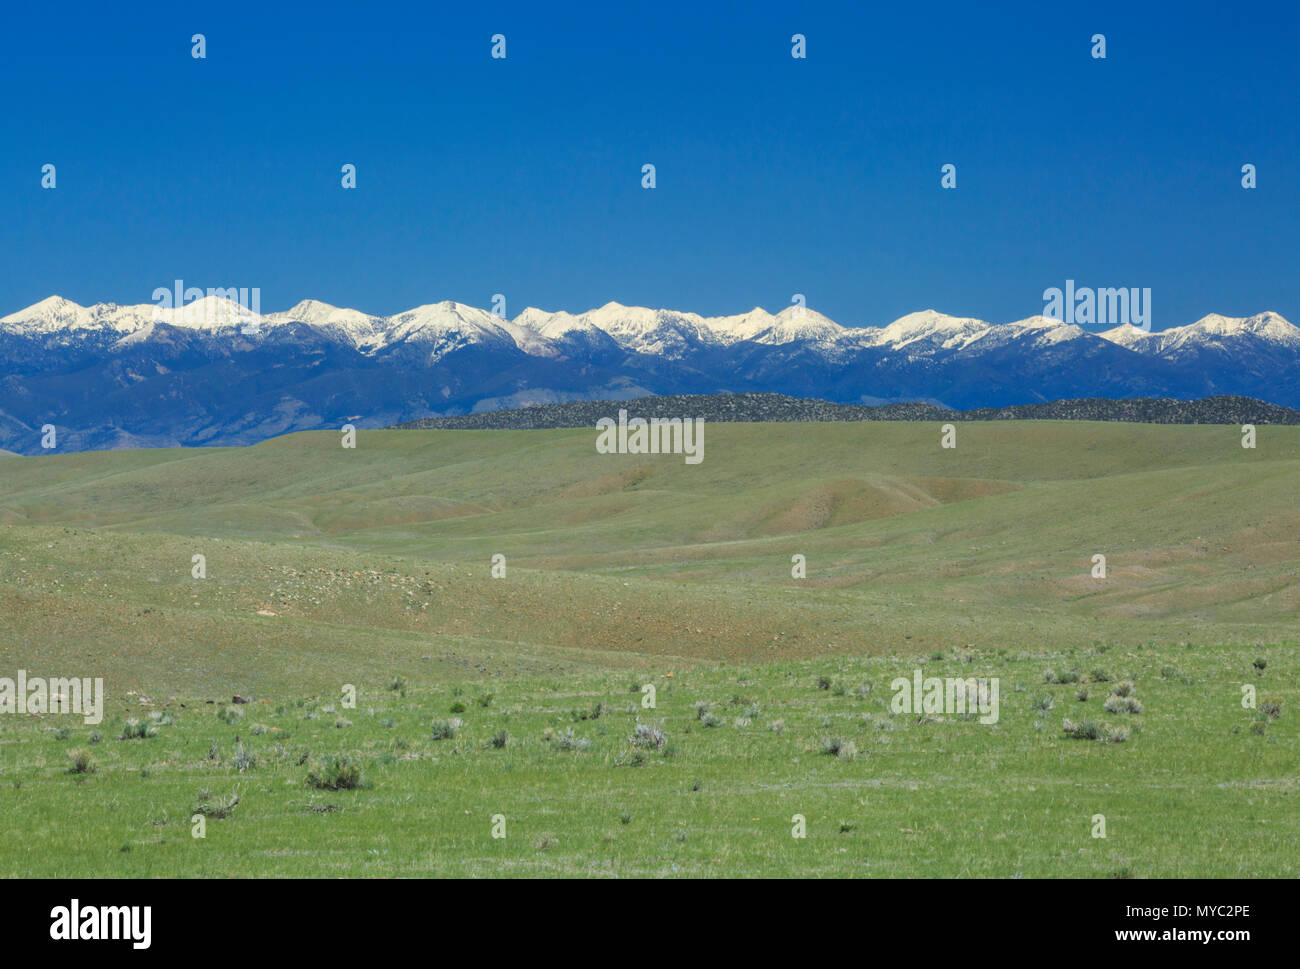 Los pastizales y las cimas de las montañas cercanas a raíz del tabaco Dillon, Montana Foto de stock